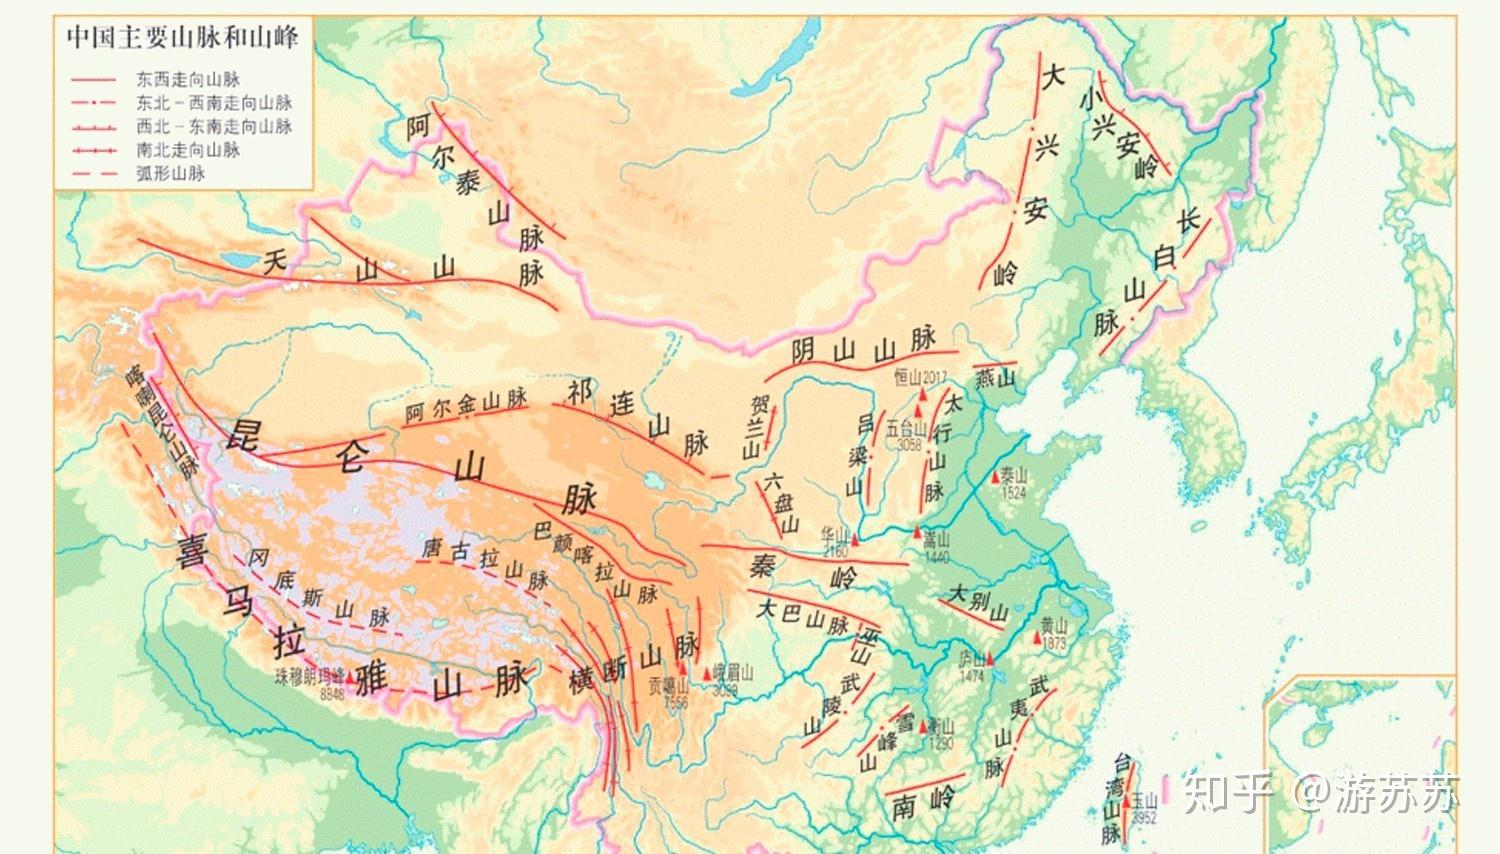 从地理位置说起,太行山横跨北京,河北,山西和河南四省,绵延400余公里